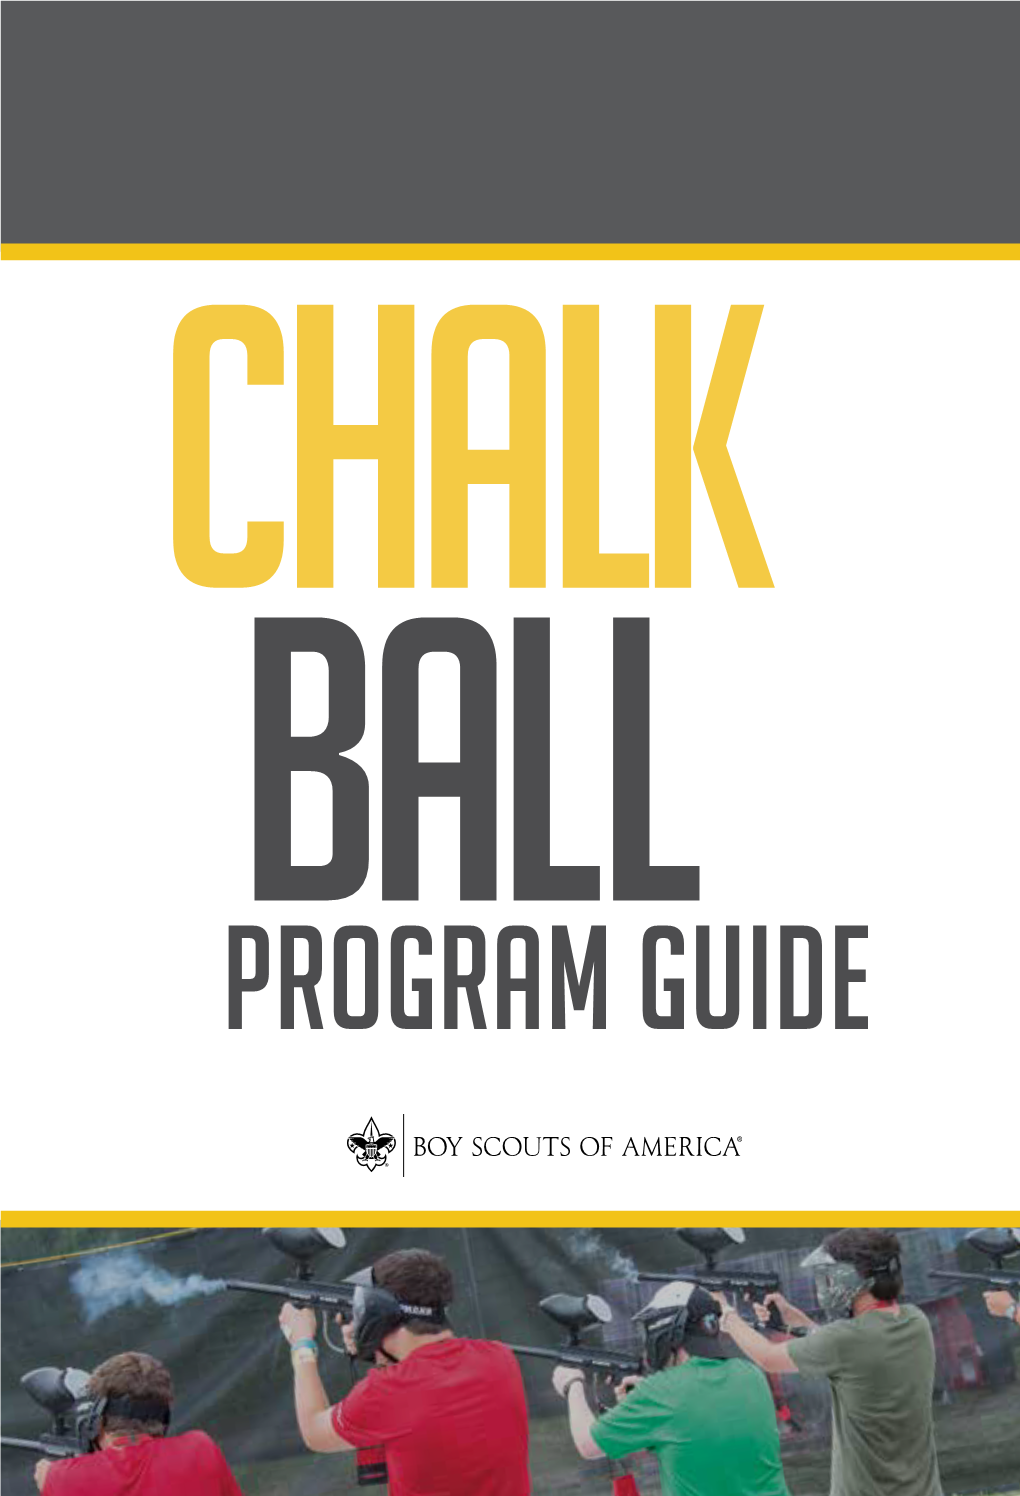 Program Guide Chalk Ball Program Guide